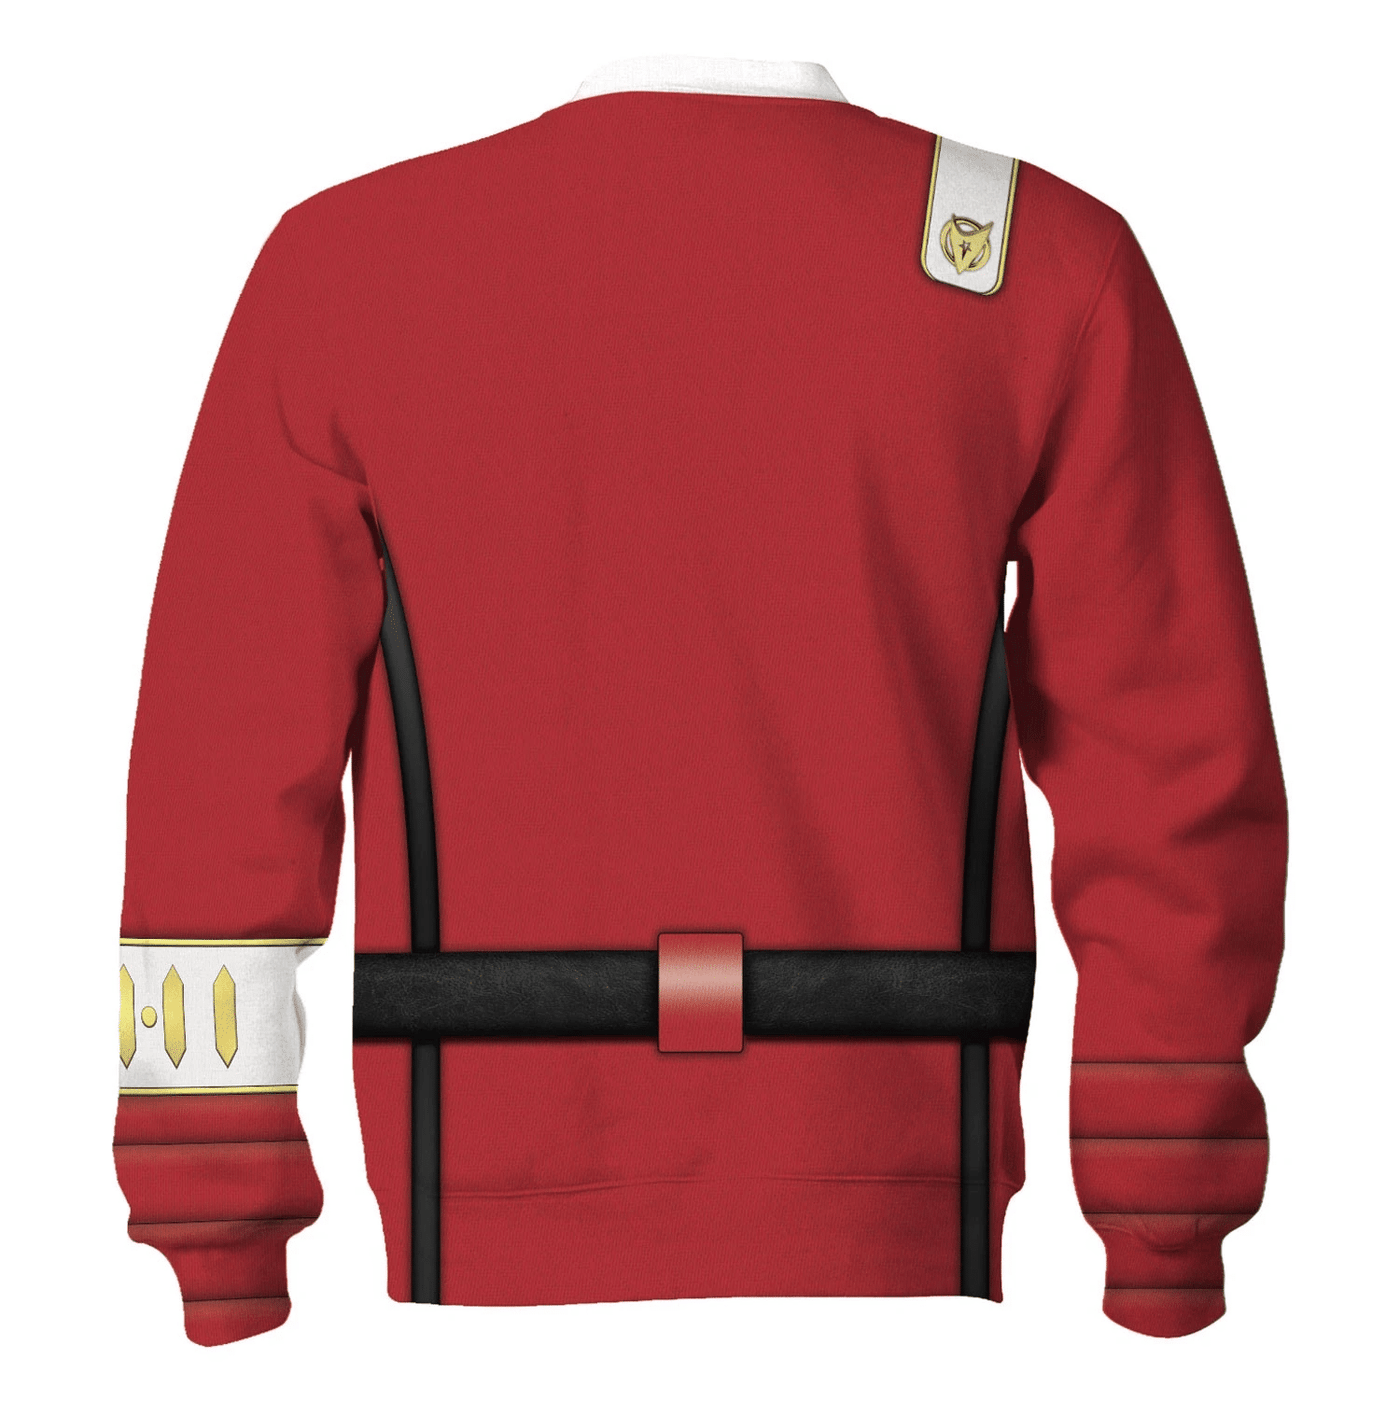 Star Trek Starfleet UniformThe Wrath of Khan Officer Cool - Sweater - Ugly Christmas Sweater